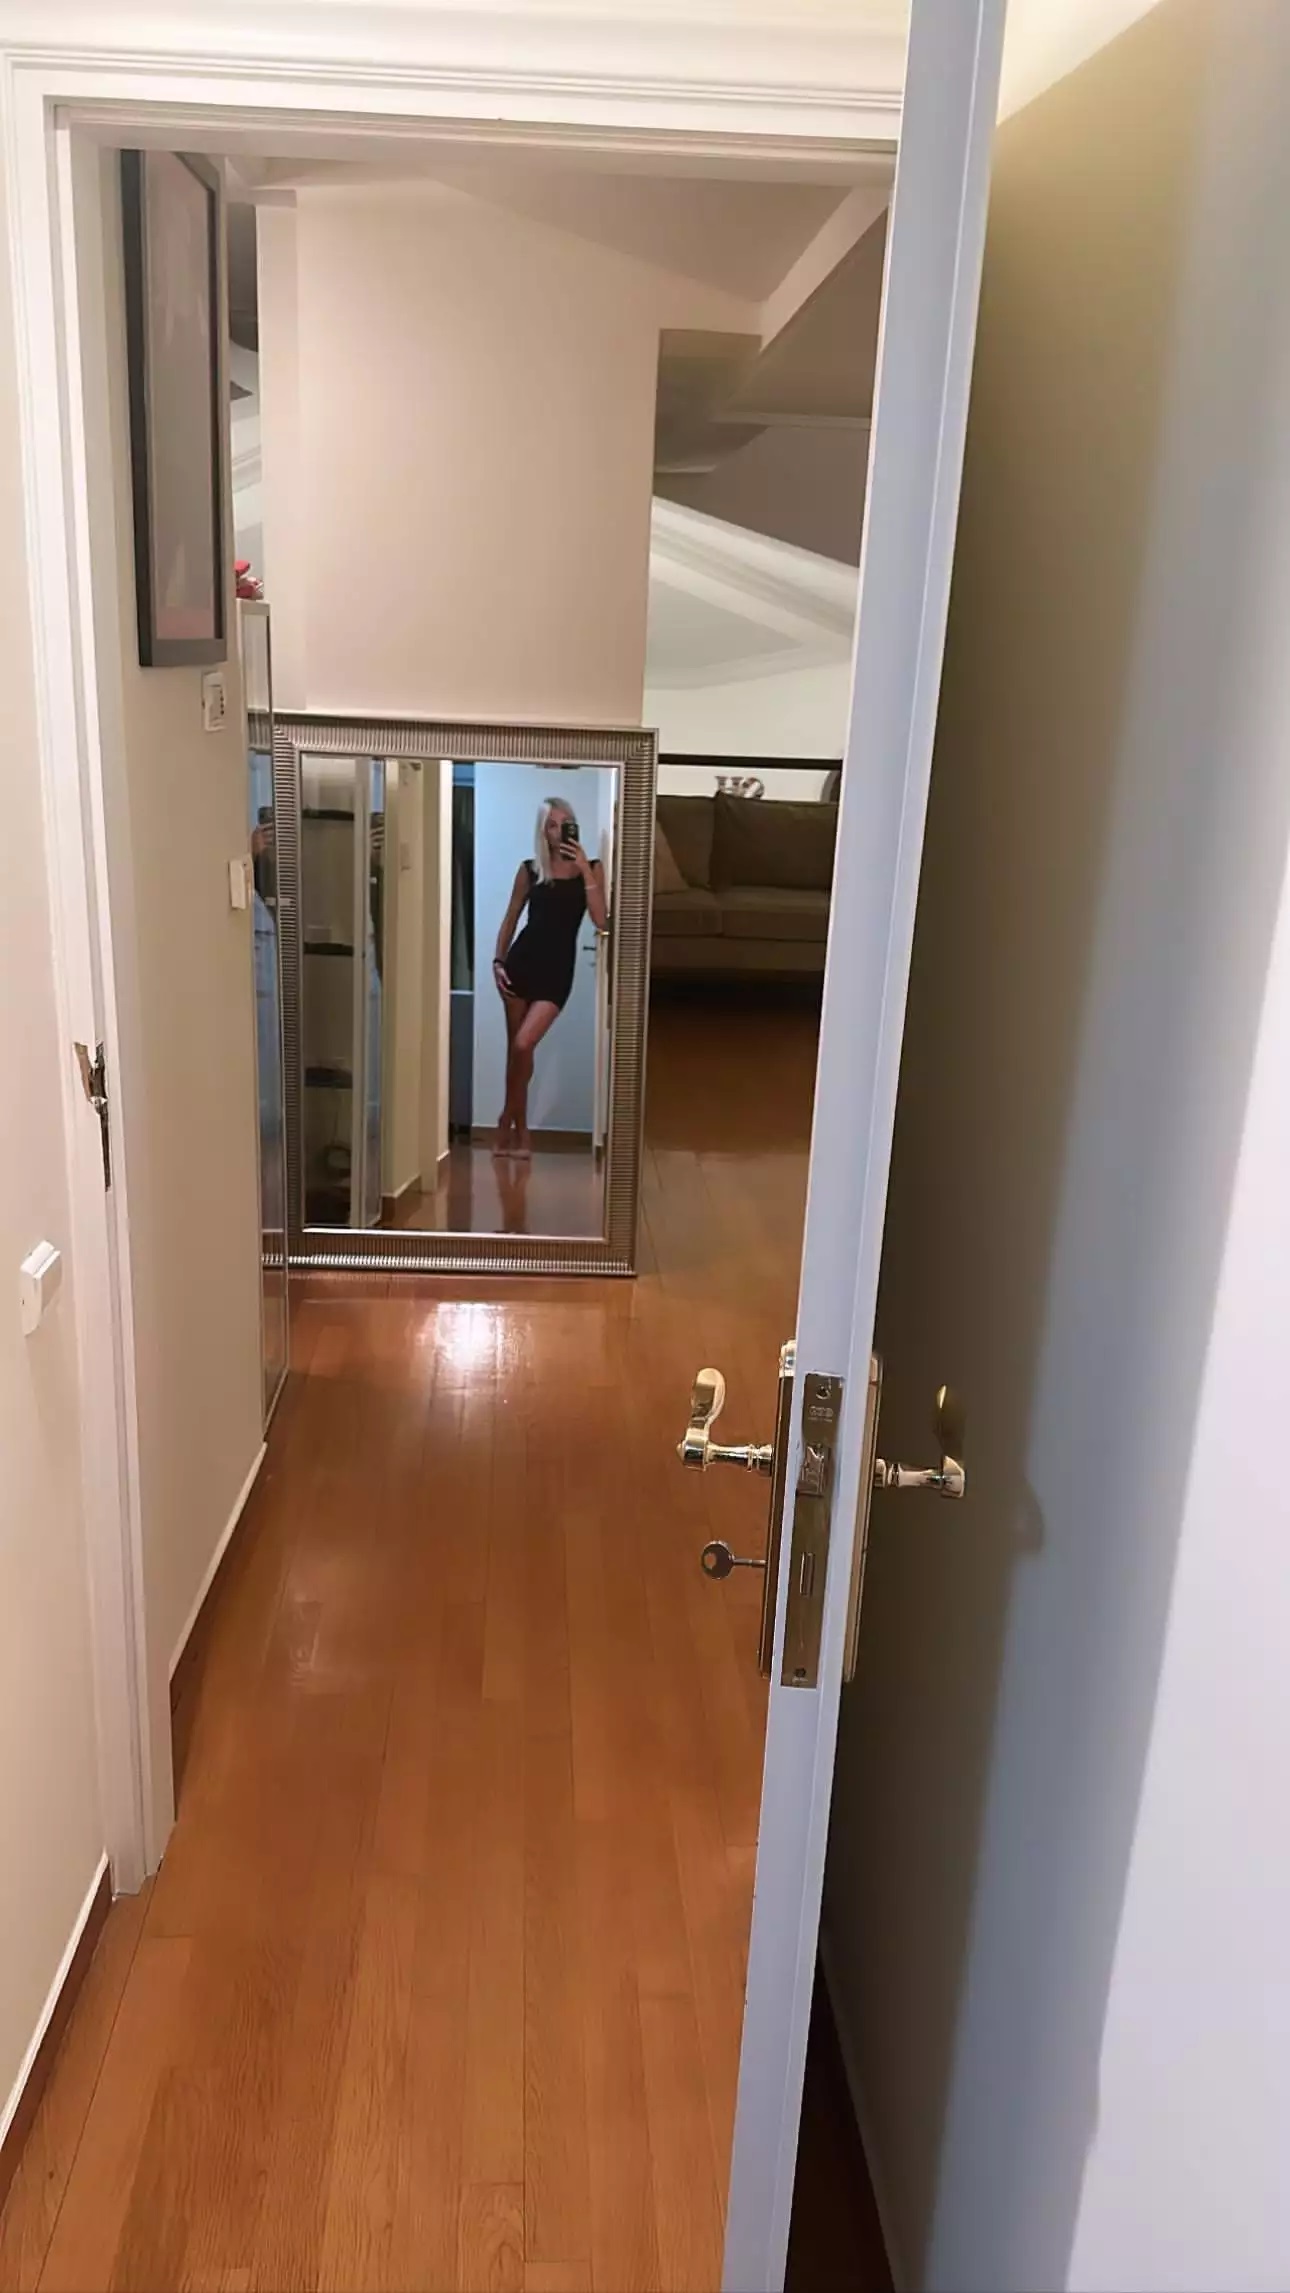 Η πρώτη φωτογραφία της Φαίης Σκορδά από το νέο της σπίτι- Ο ιδιαίτερος τρόπος που έχει βάλει τον καθρέφτη της! (εικόνα)